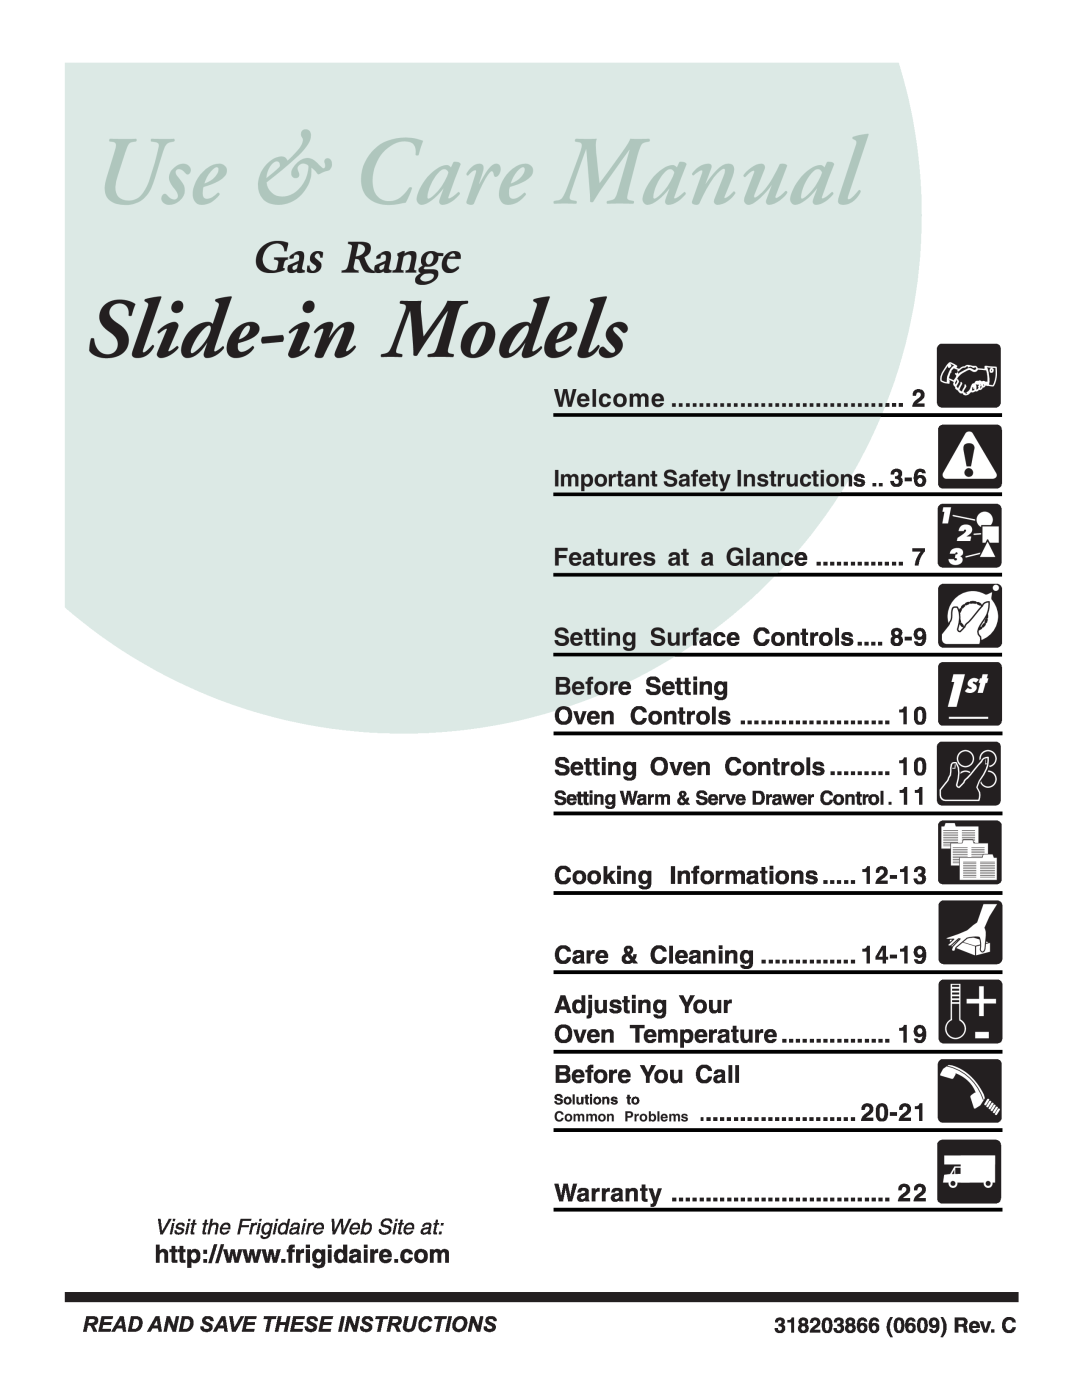 Frigidaire 318203866 warranty Slide-in Models, Gas Range 